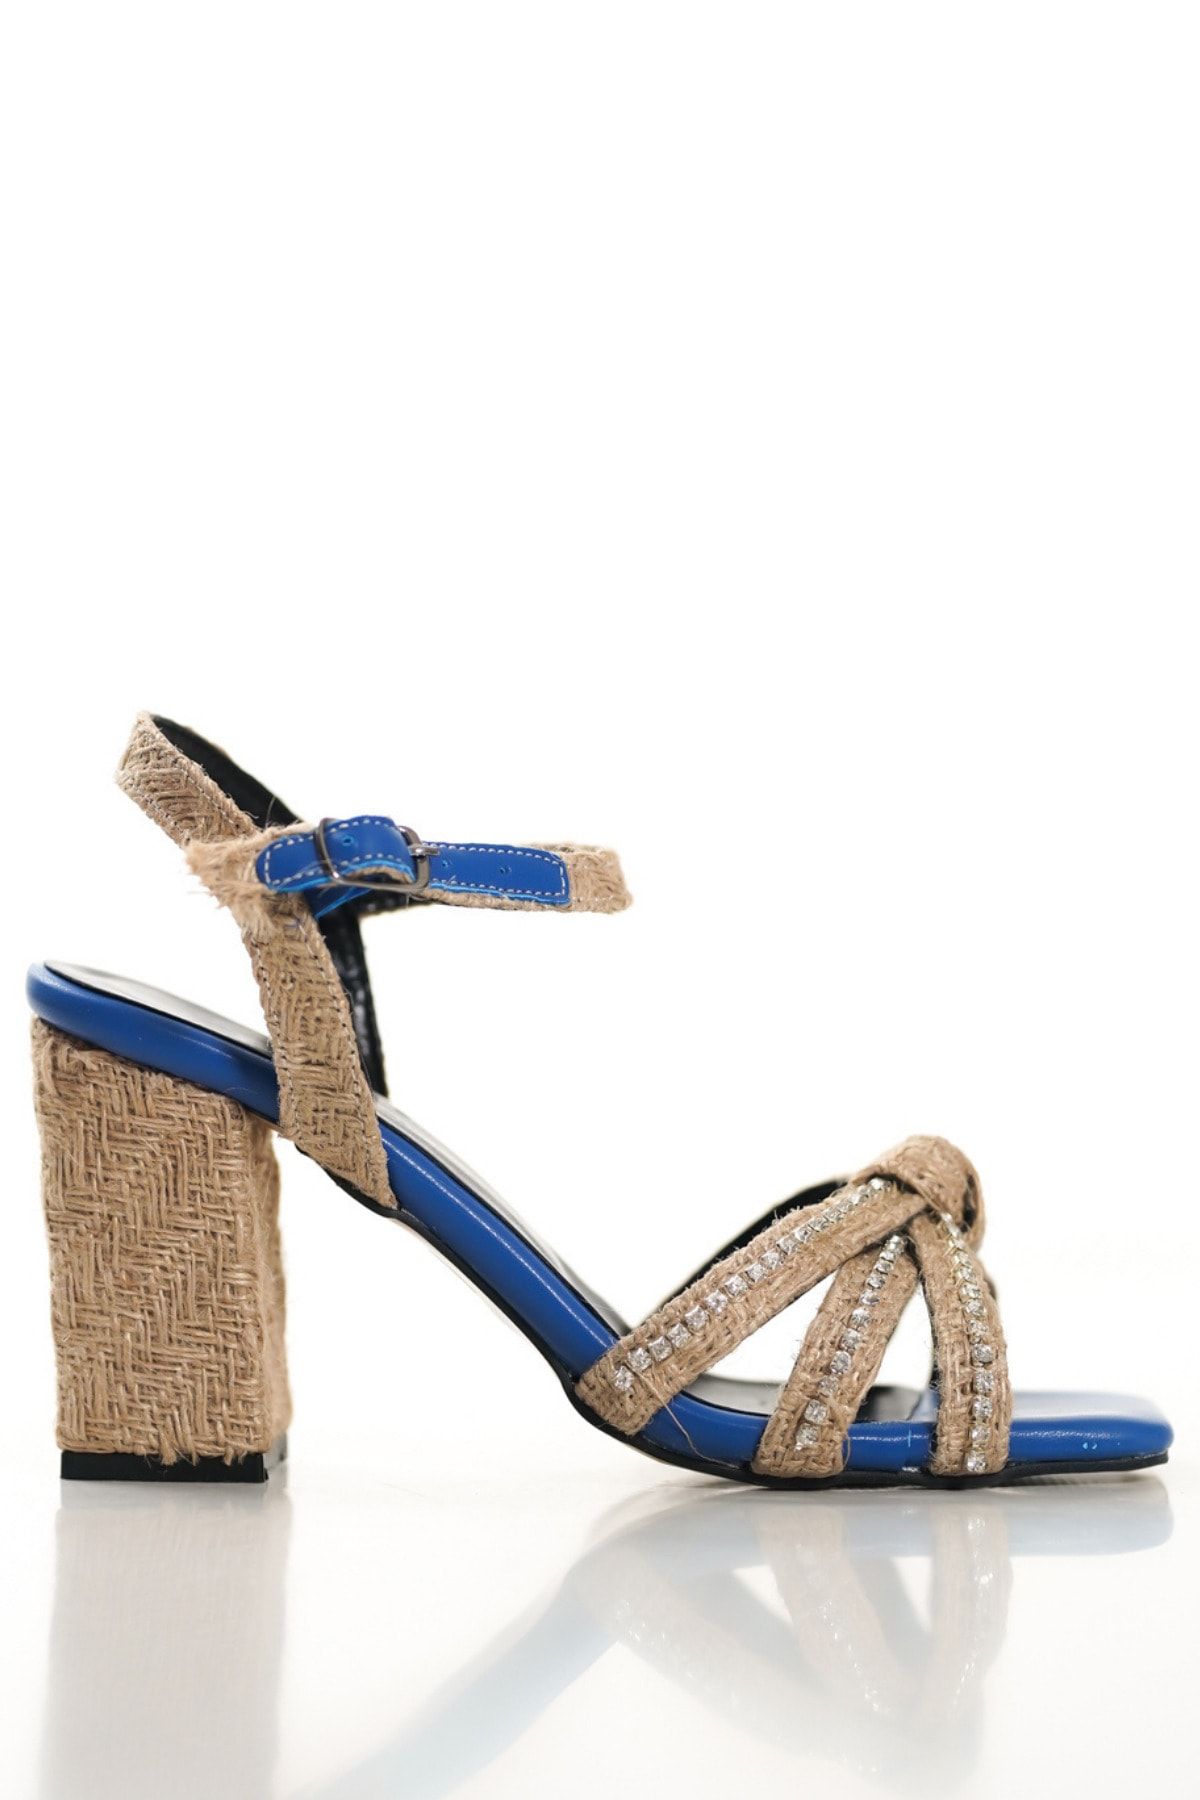 SAYL Mavi Kadın Hasır Topuklu Ayakkabı Taşlı Bilekten Bağlamalı Sandalet